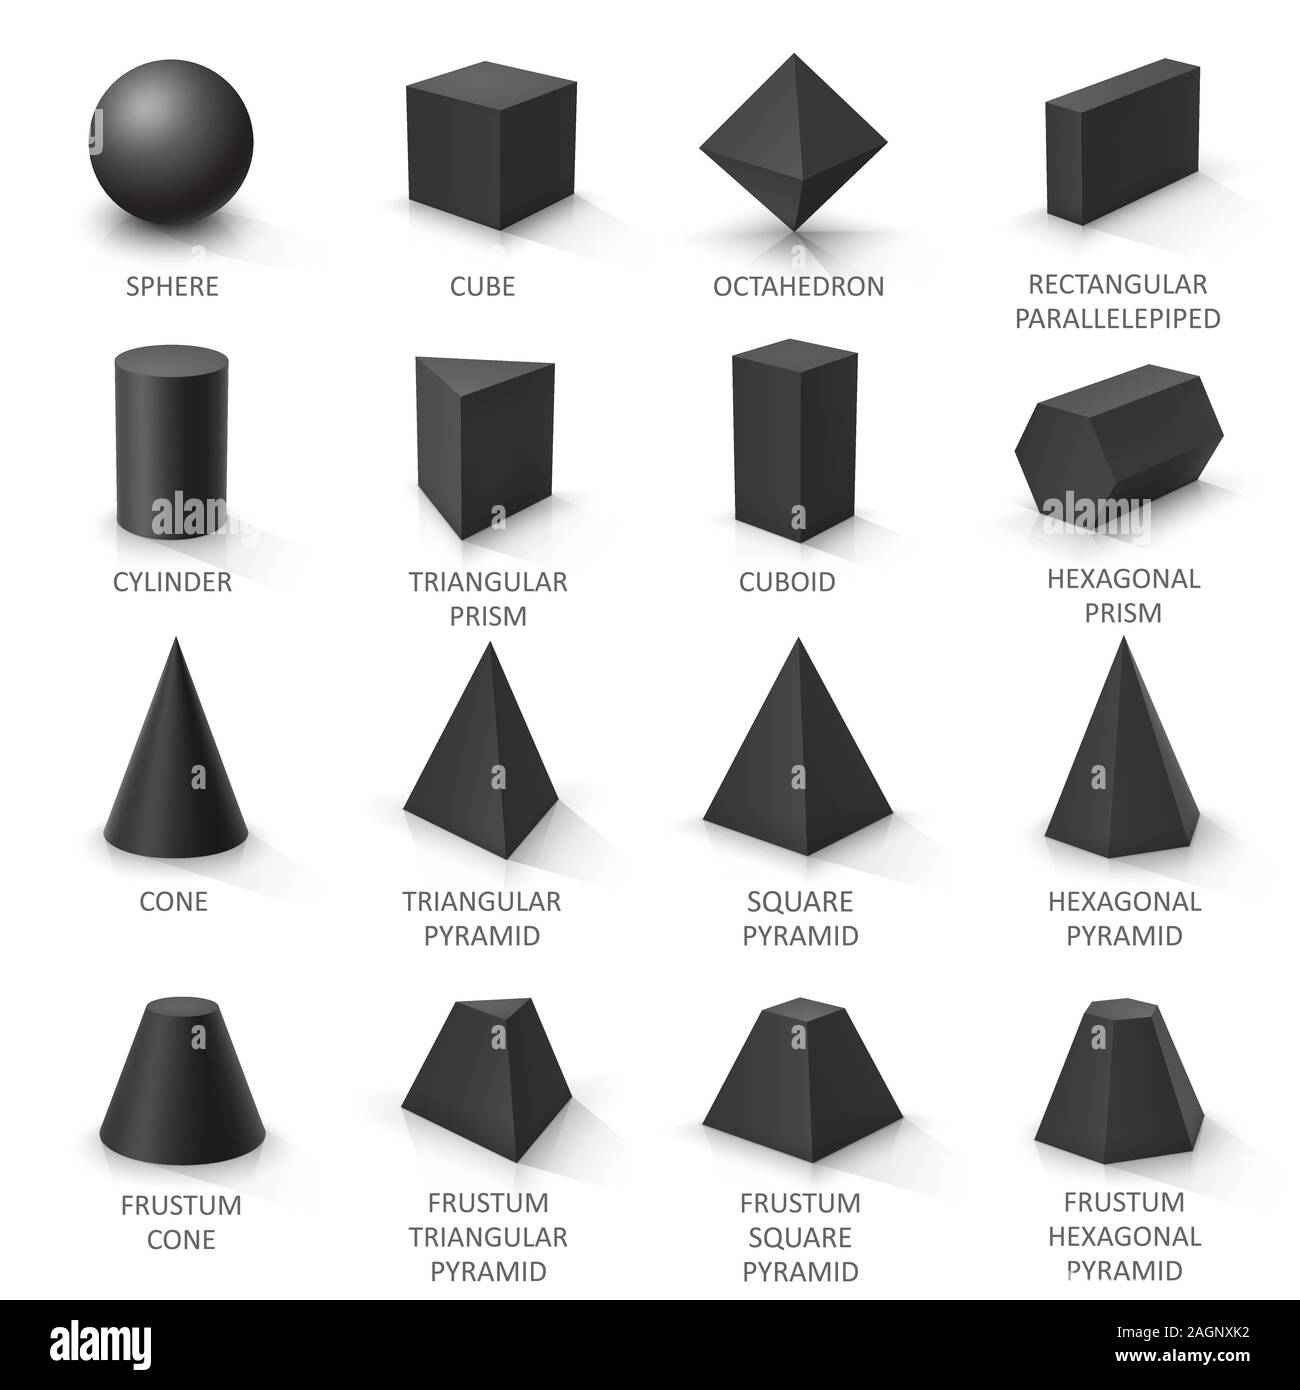 Set of basic geometric shapes black image Vector Image